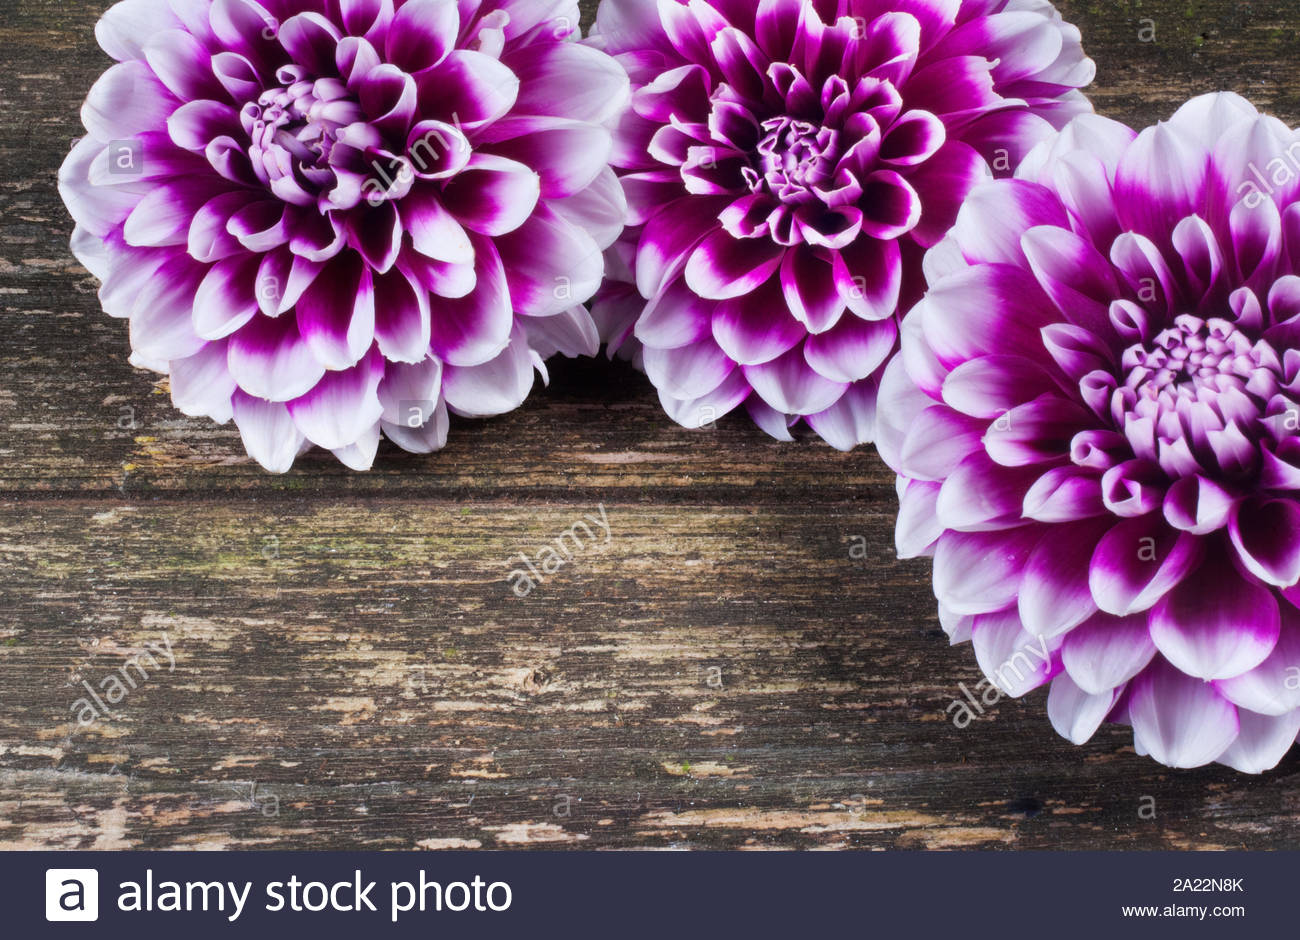 Studio Shot Of Dahlia Flower Against A Dark Wooden Background